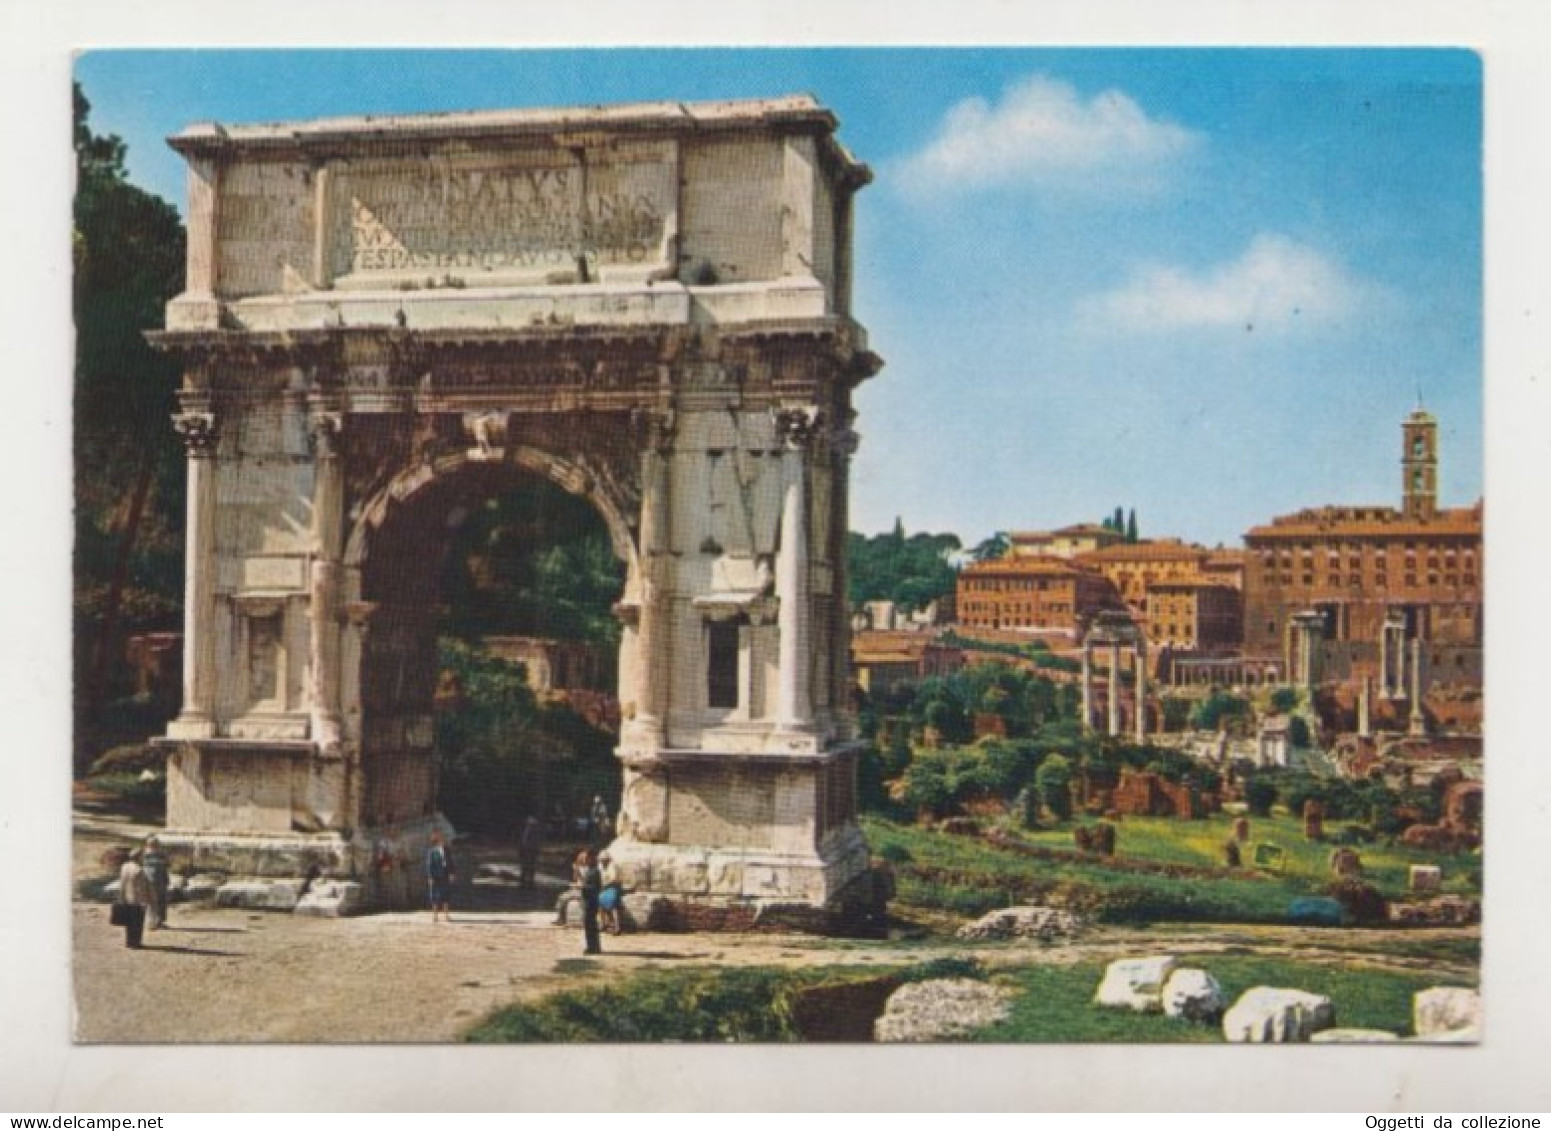 Roma, Arco Di Tito - Viaggiata 21/04/1987, Destinazione Aosta (1399) - Andere Monumente & Gebäude